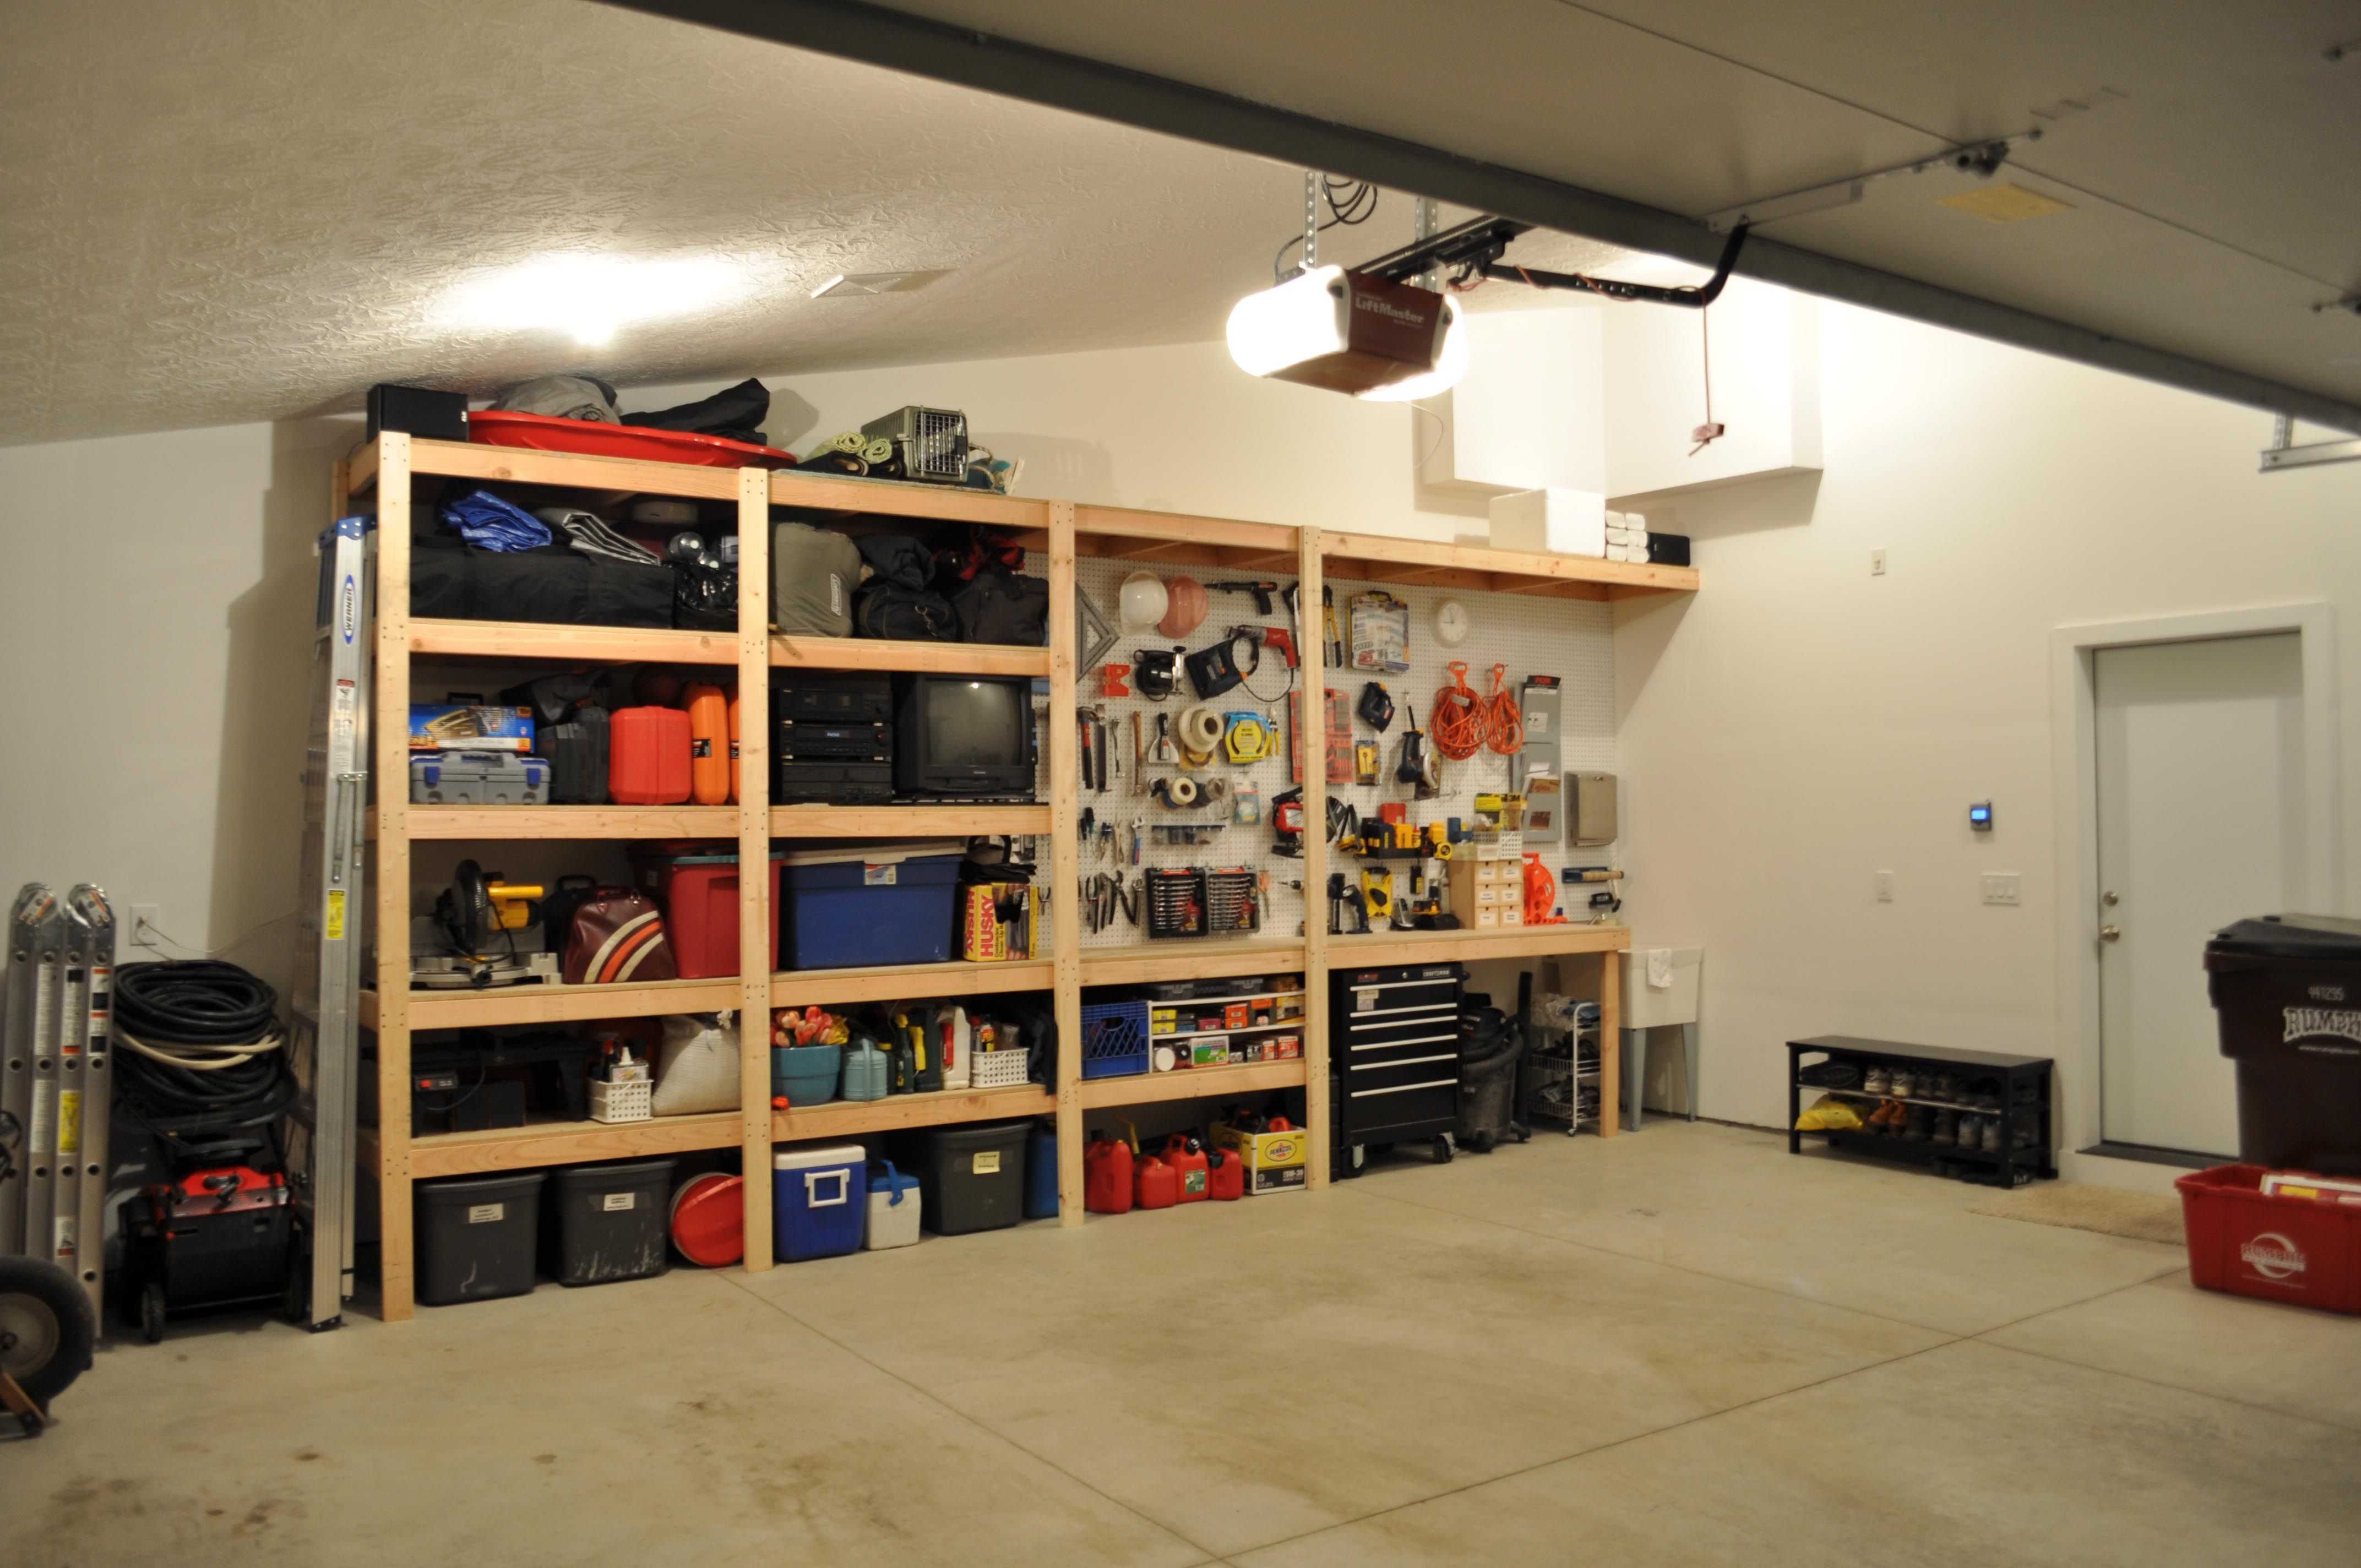 Cамоделки для гаража - полезные идеи